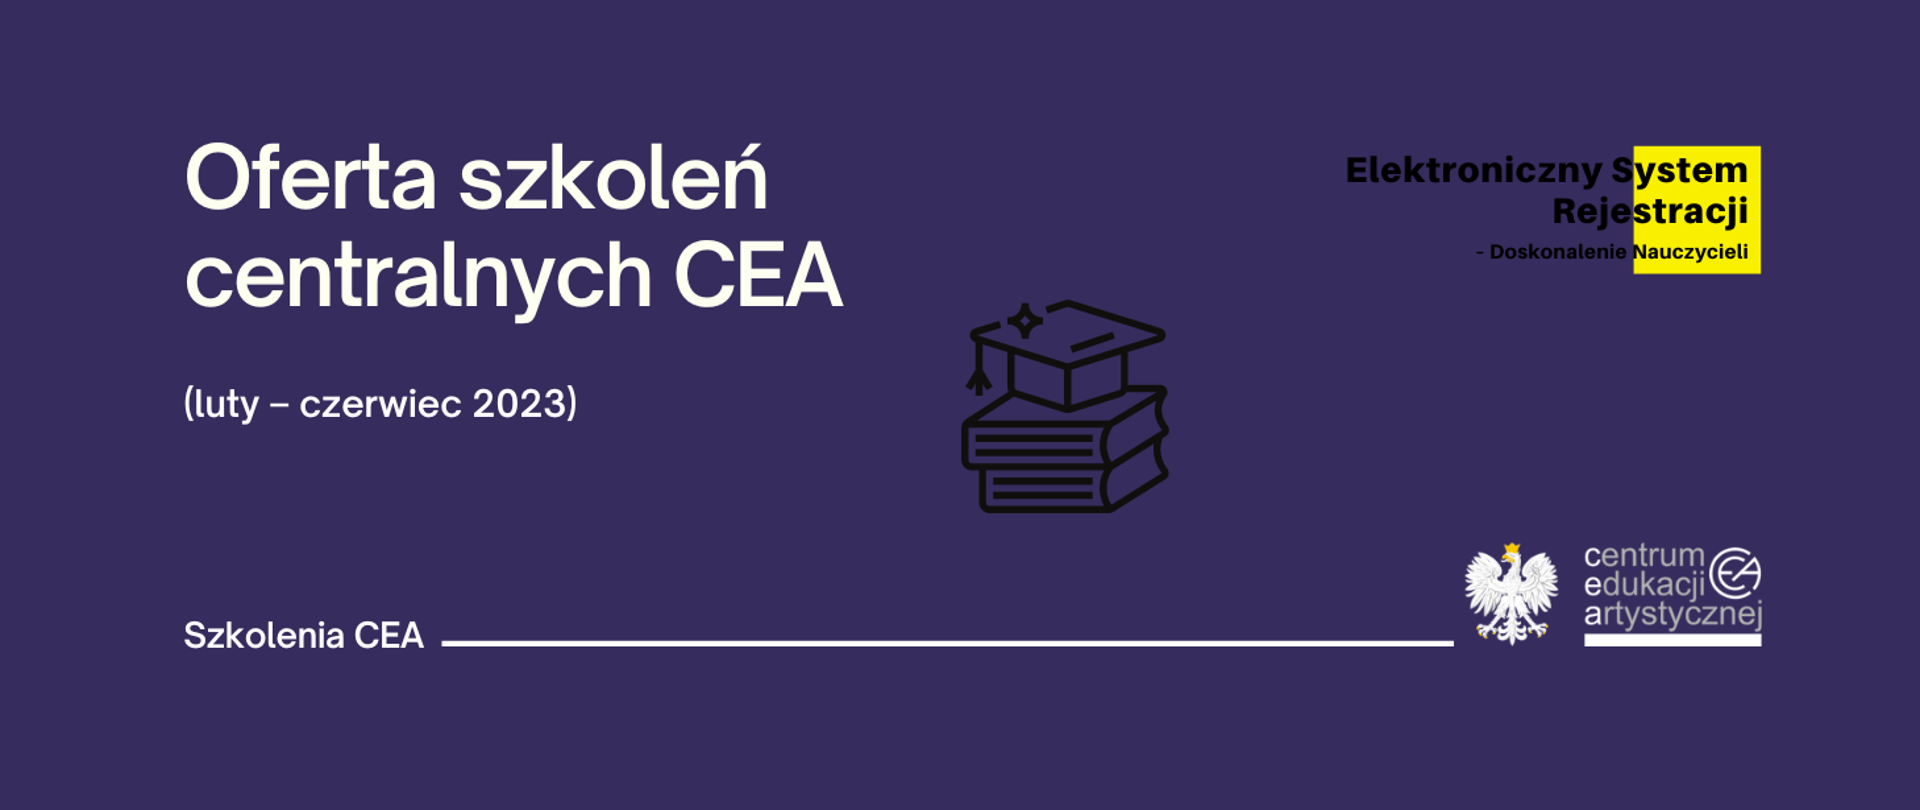 Fioletowa grafika z logo CEA w prawym dolnym rogu, logo elektronicznego systemu rejestracji nauczycieli w prawym górnym rogu i tekstem "Oferta szkoleń centralnych CEA (luty - czerwiec 2023)"